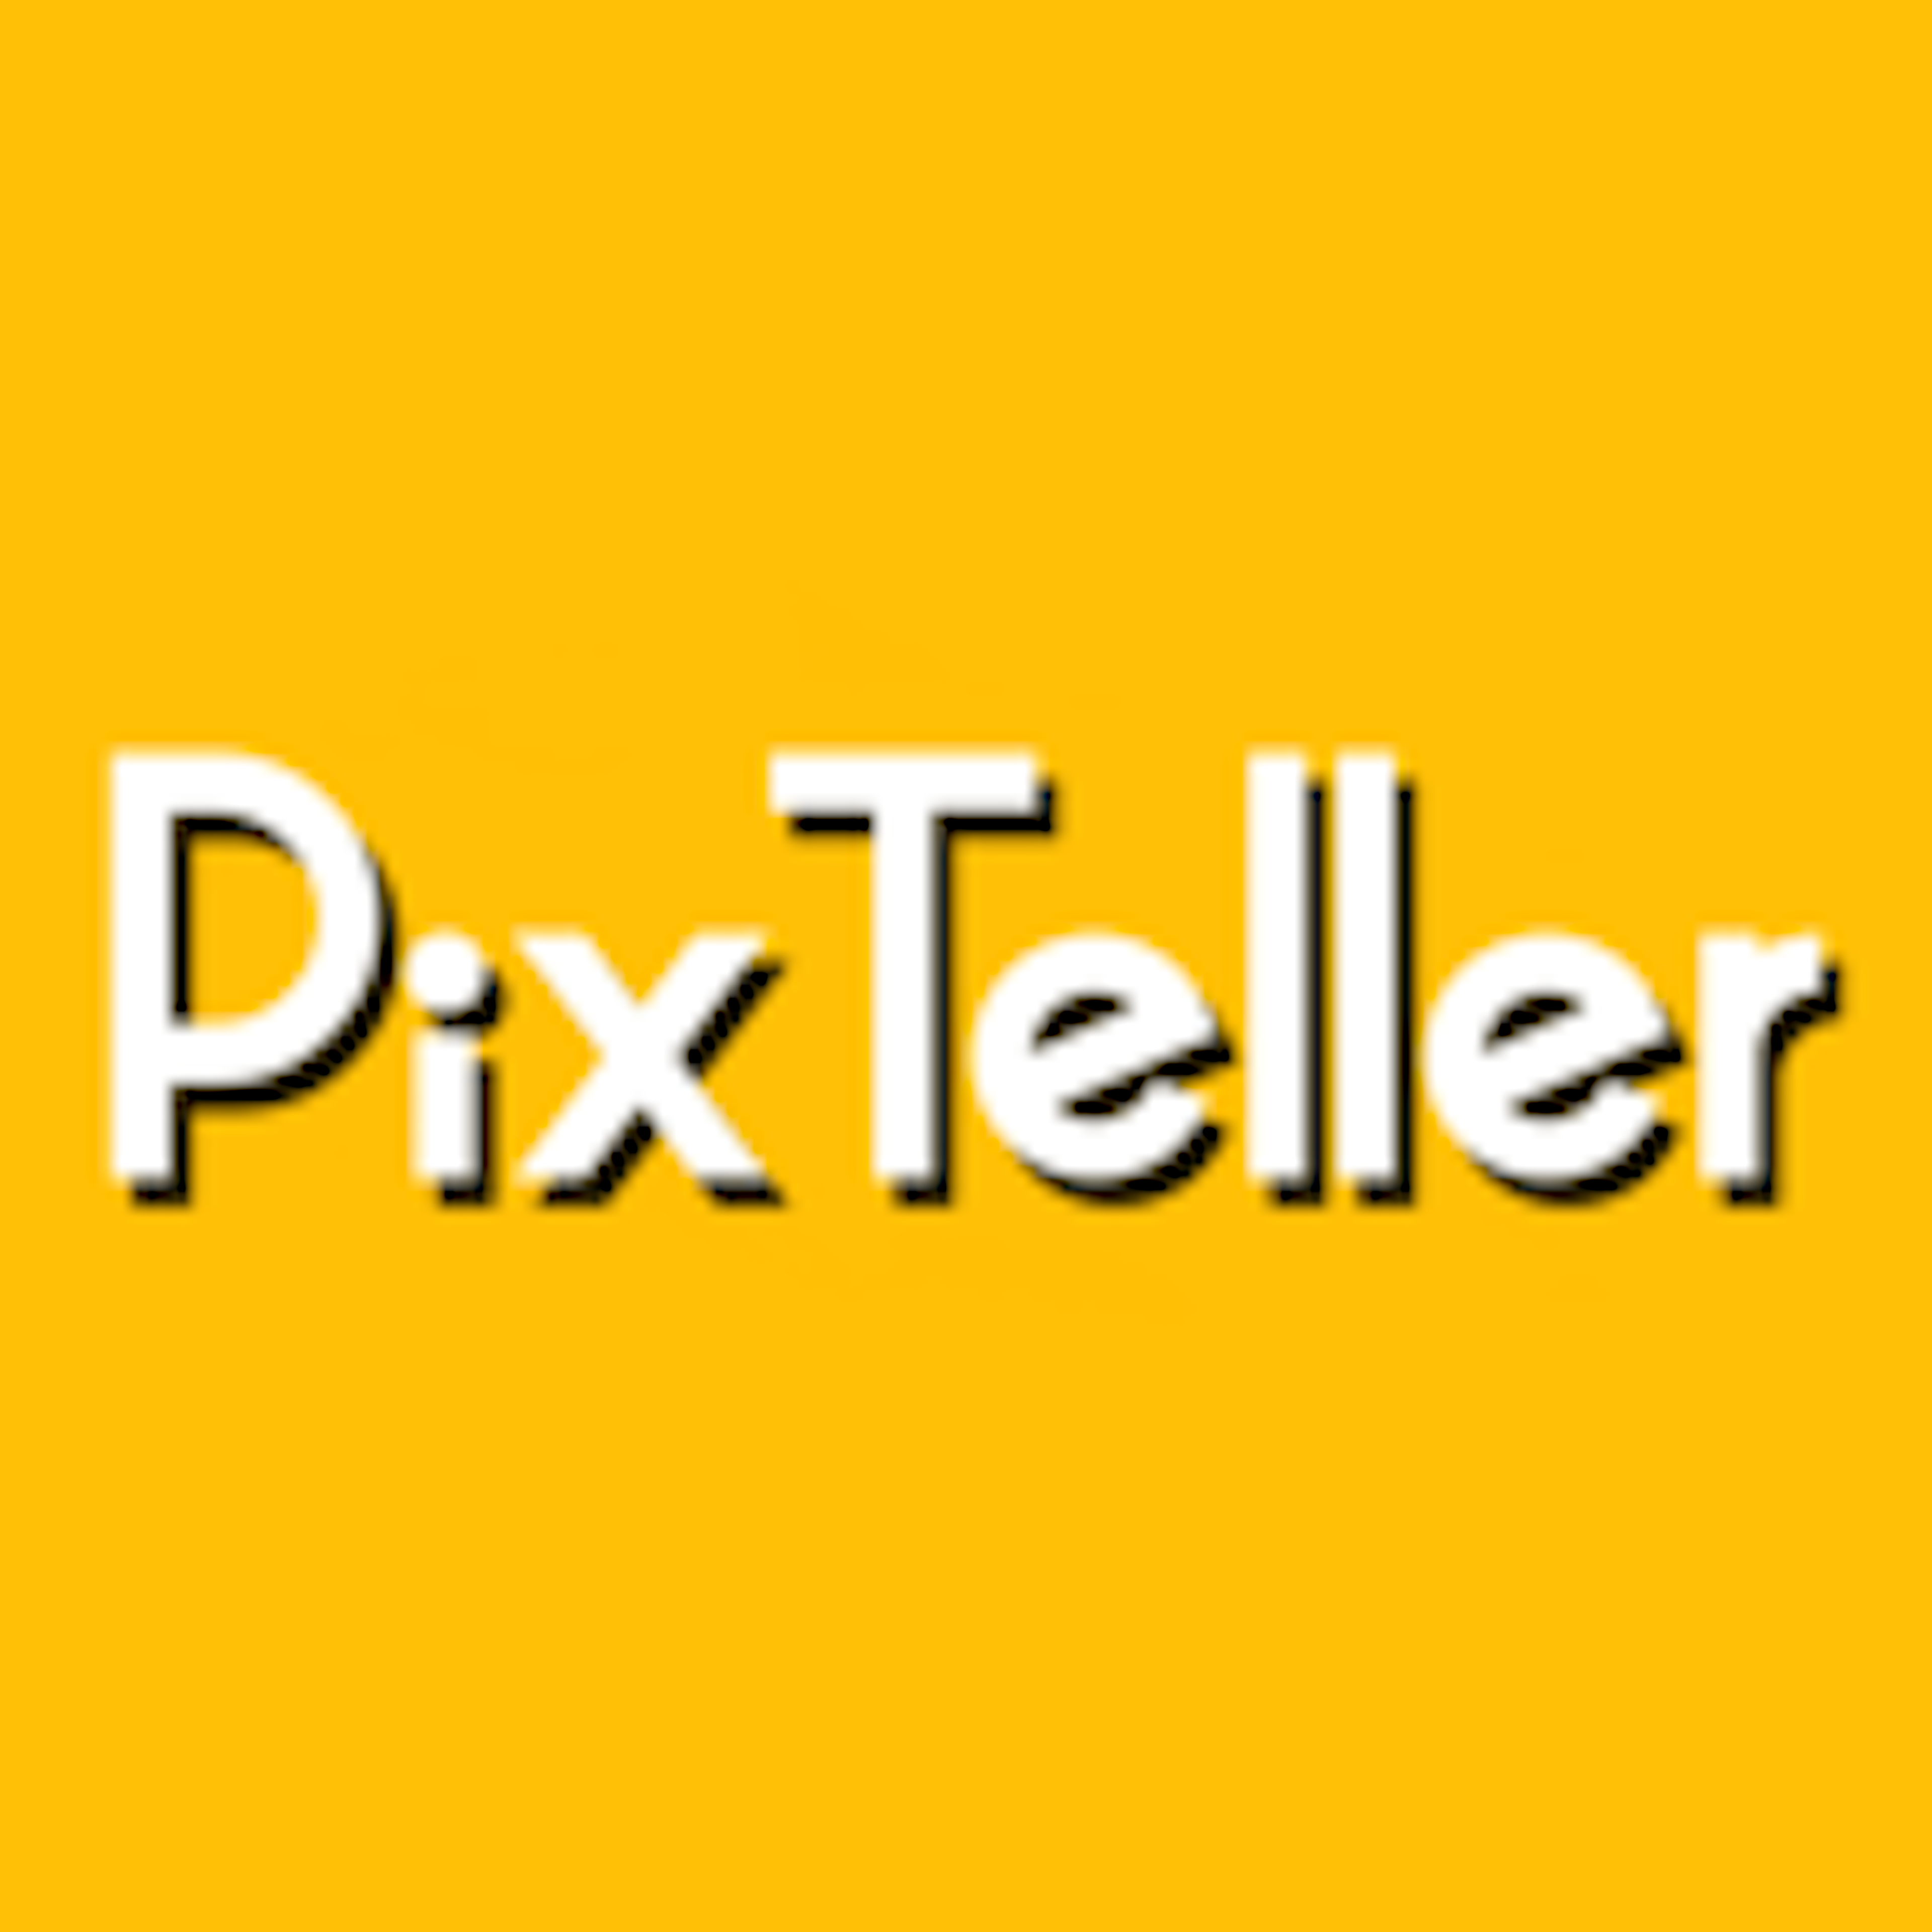 PixTeller Logo